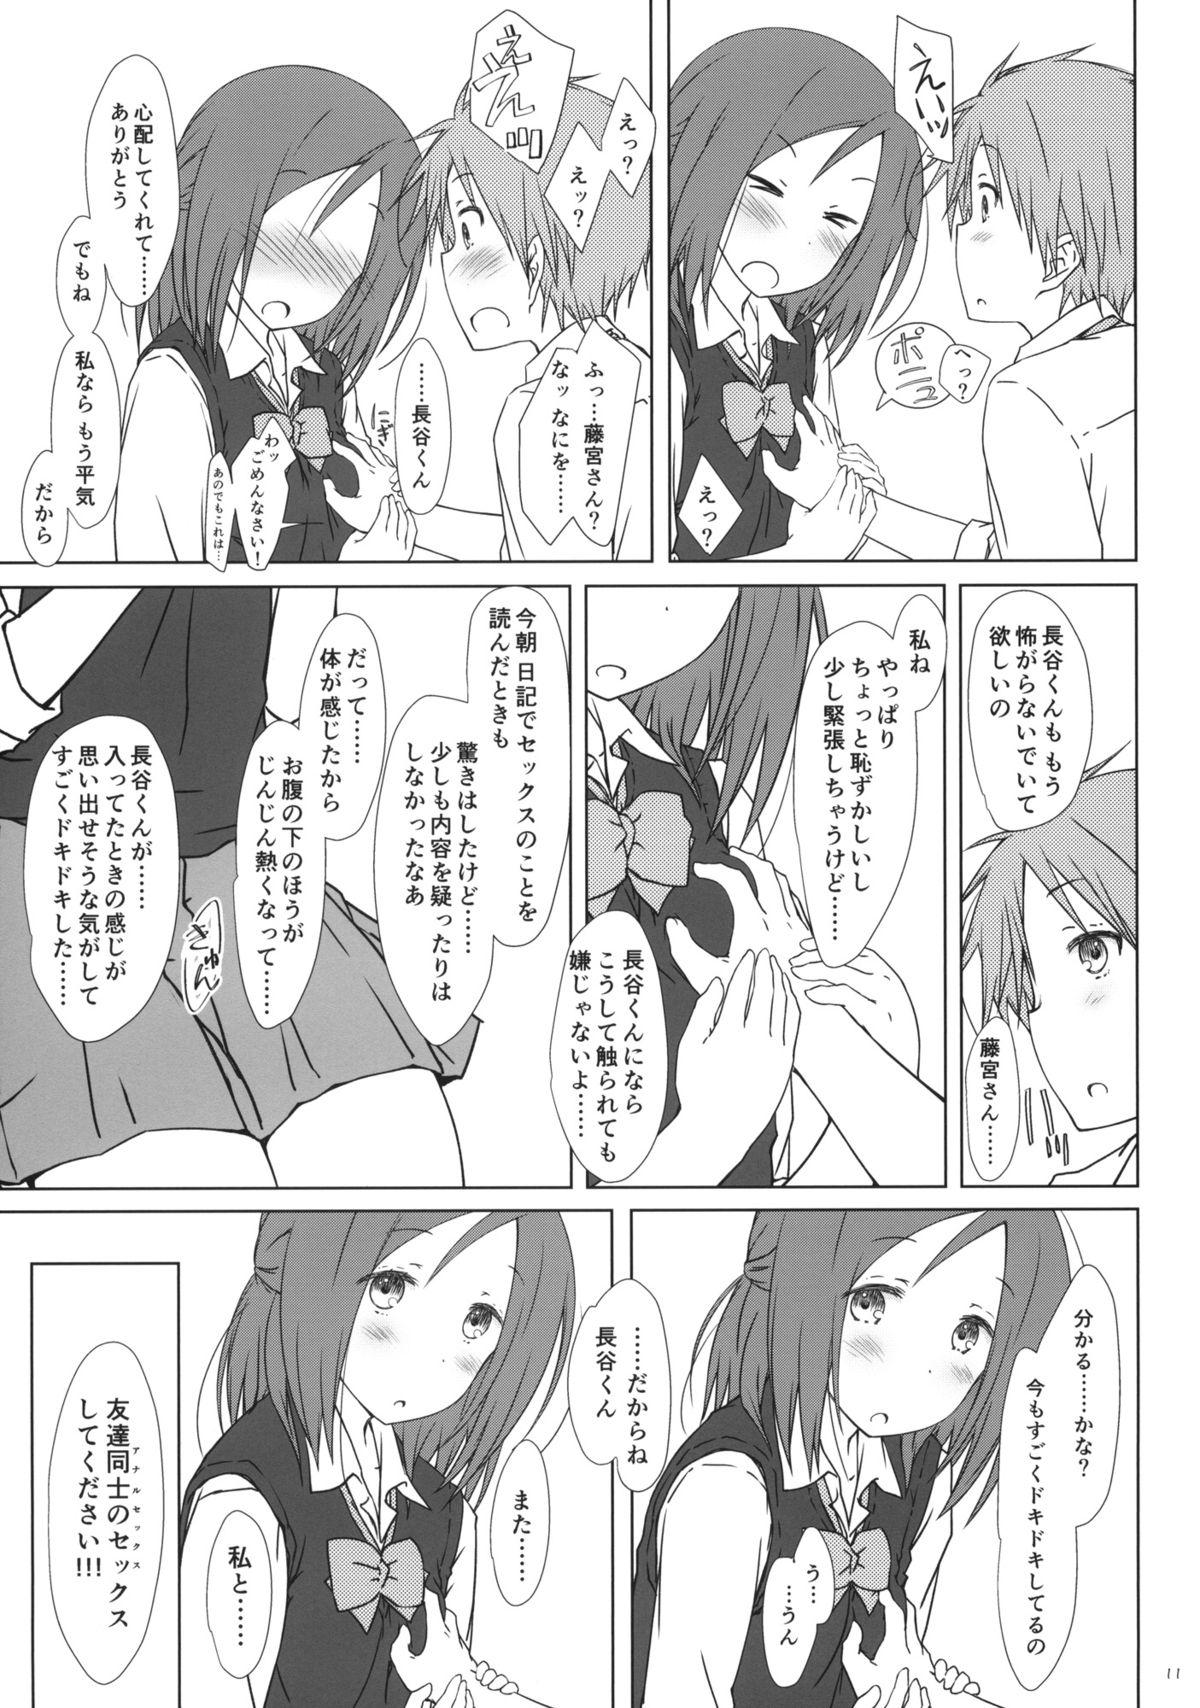 Putita "Tomodachi to no Sex no Tsuzuki no sorekara." + Paper - One week friends Adorable - Page 10